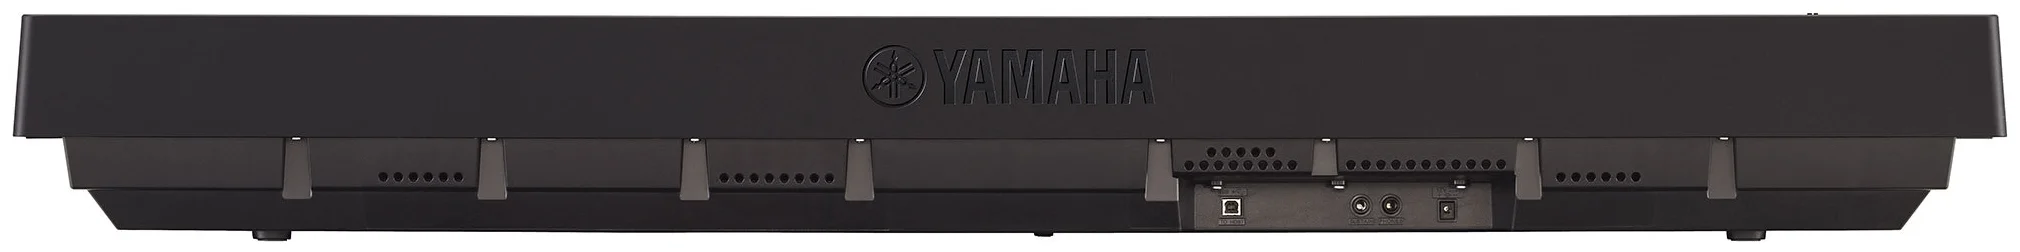 YAMAHA P-45 - жесткость клавиатуры: взвешенная